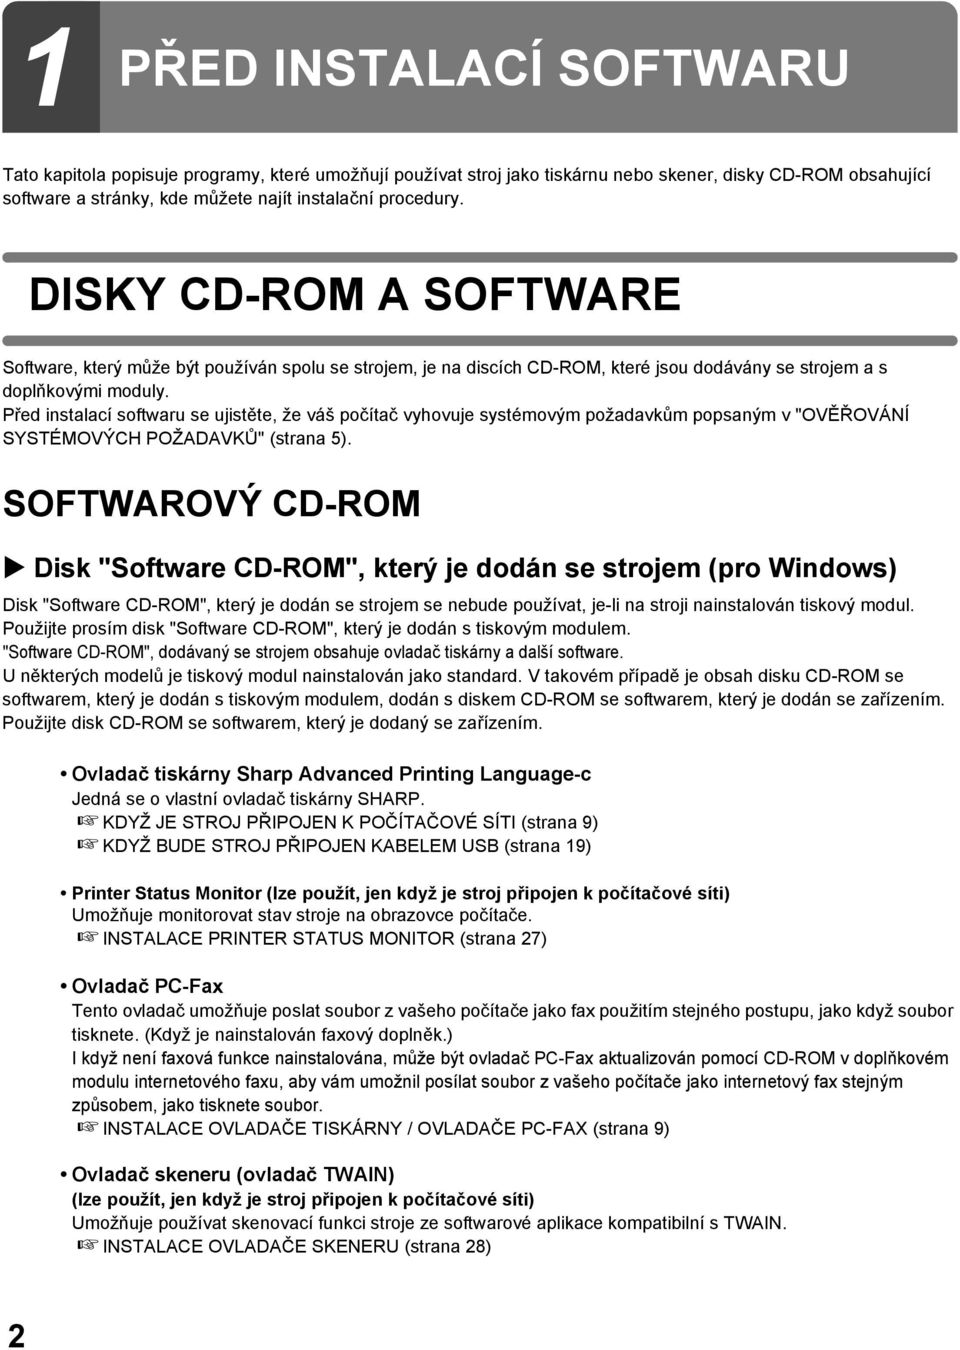 Před instalací softwaru se ujistěte, že váš počítač vyhovuje systémovým požadavkům popsaným v "OVĚŘOVÁNÍ SYSTÉMOVÝCH POŽADAVKŮ" (strana 5).